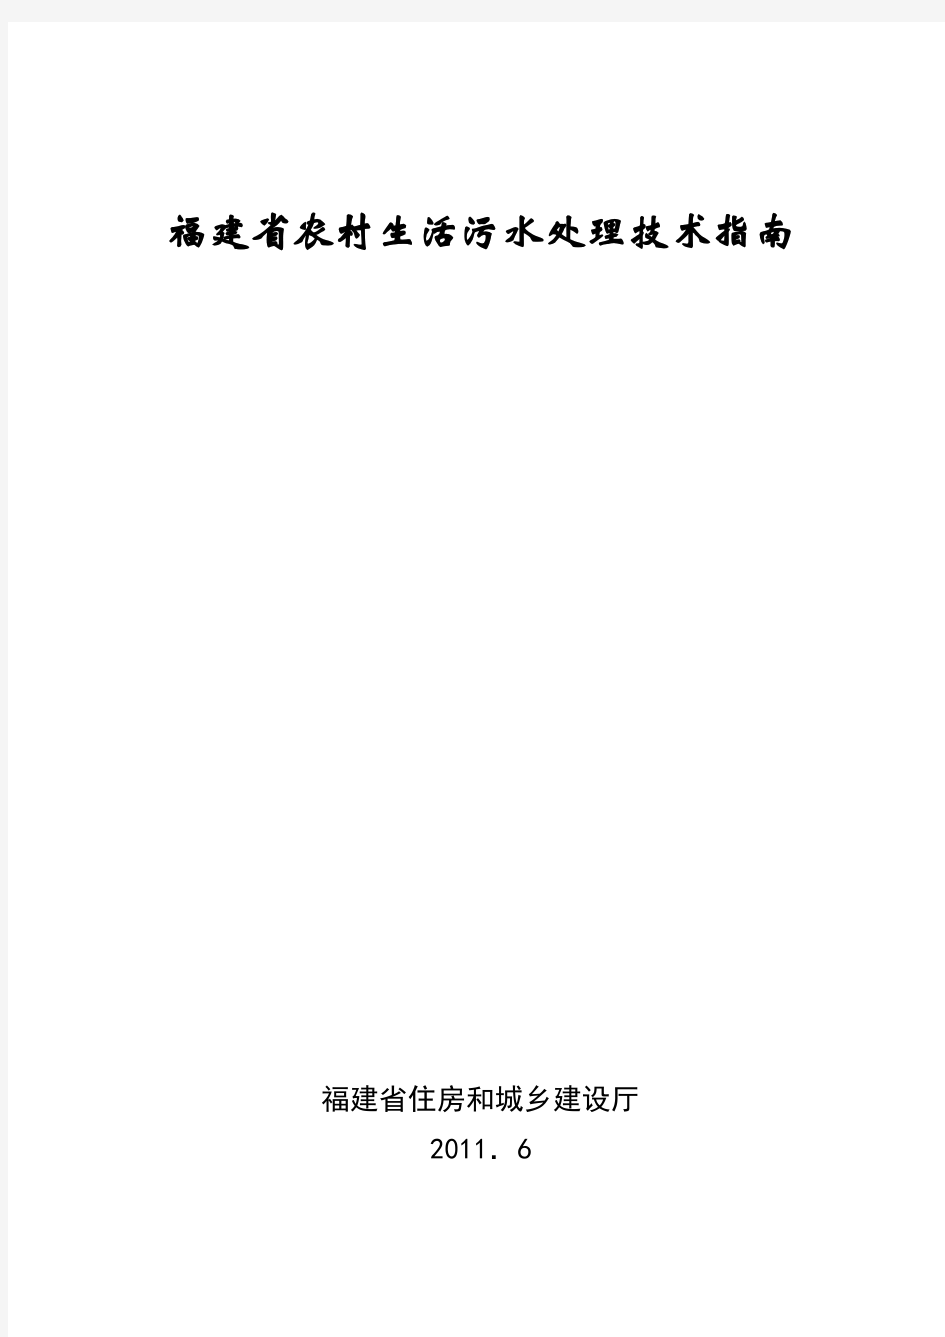 福建省农村生活污水处理技术指南